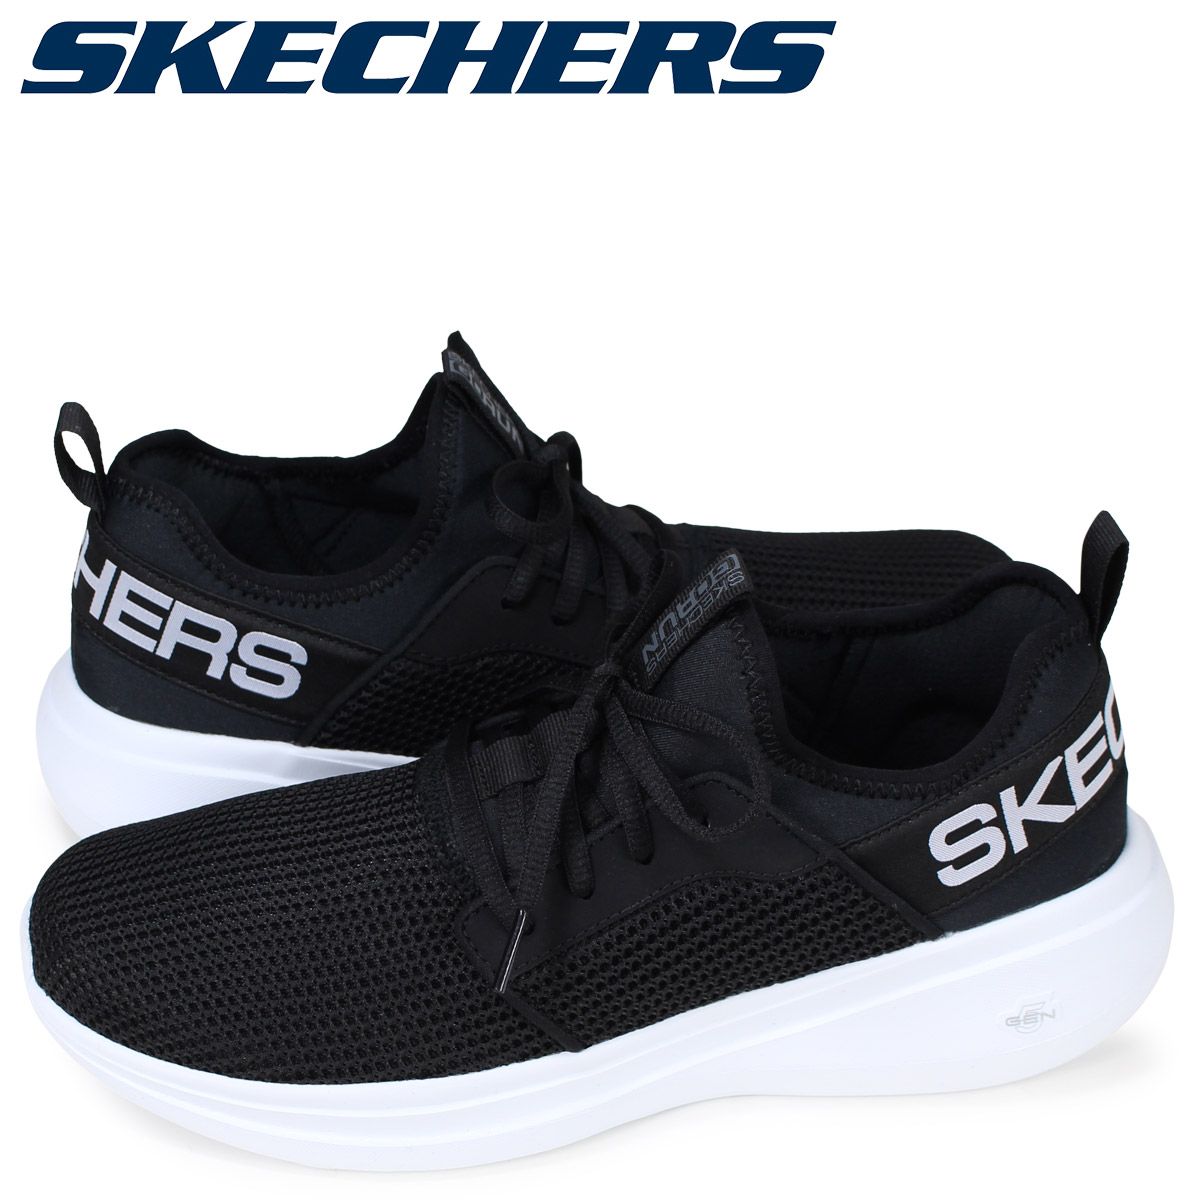 skechers quick fit shoes